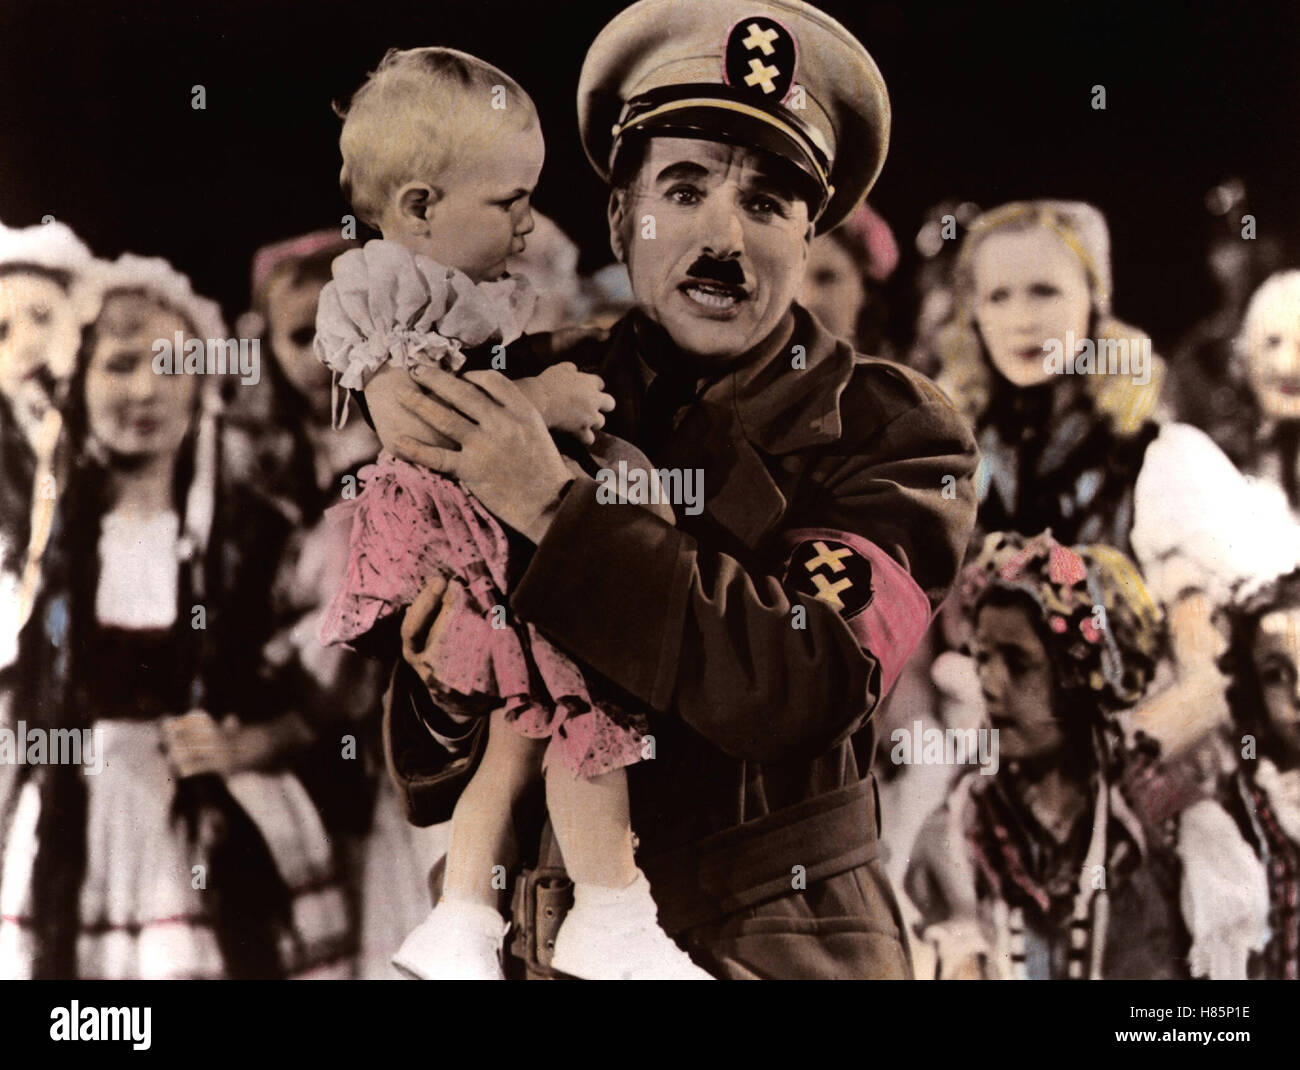 Der große Diktator, (THE GREAT DICTATOR) USA 1940 s/w, Regie: Charles Chaplin, CHARLES CHAPLIN, Stichwort: Uniform, Schnauzbart Stock Photo